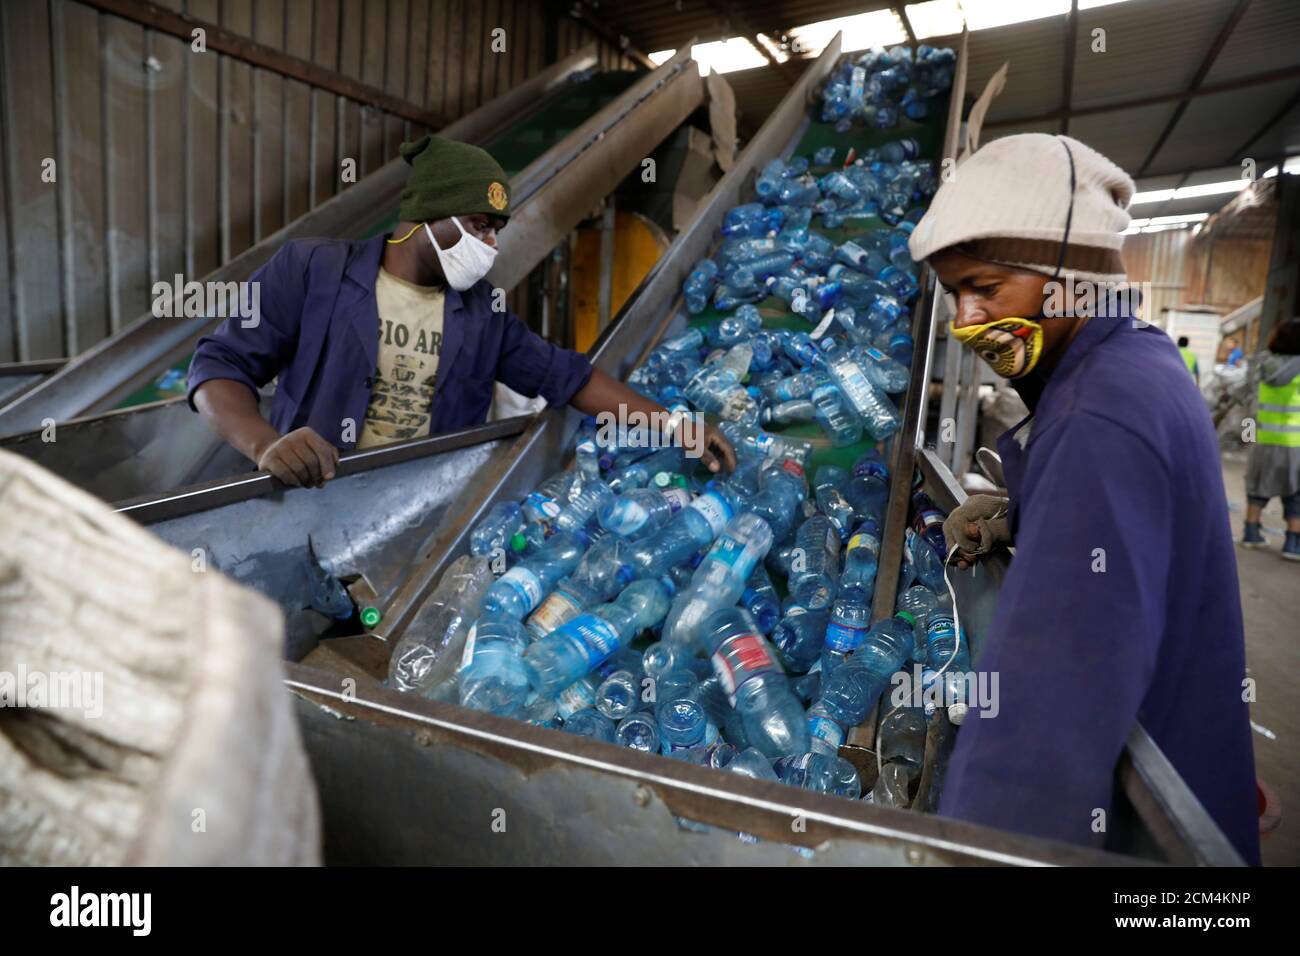 Mitarbeiter sortieren Plastikflaschen in der Weeco Kunststoff-Recycling-Fabrik  im Industriegebiet Athi River in der Nähe von Nairobi, Kenia, 15. Mai 2019.  Bild aufgenommen am 15. Mai 2019. REUTERS/Baz Ratner Stockfotografie - Alamy